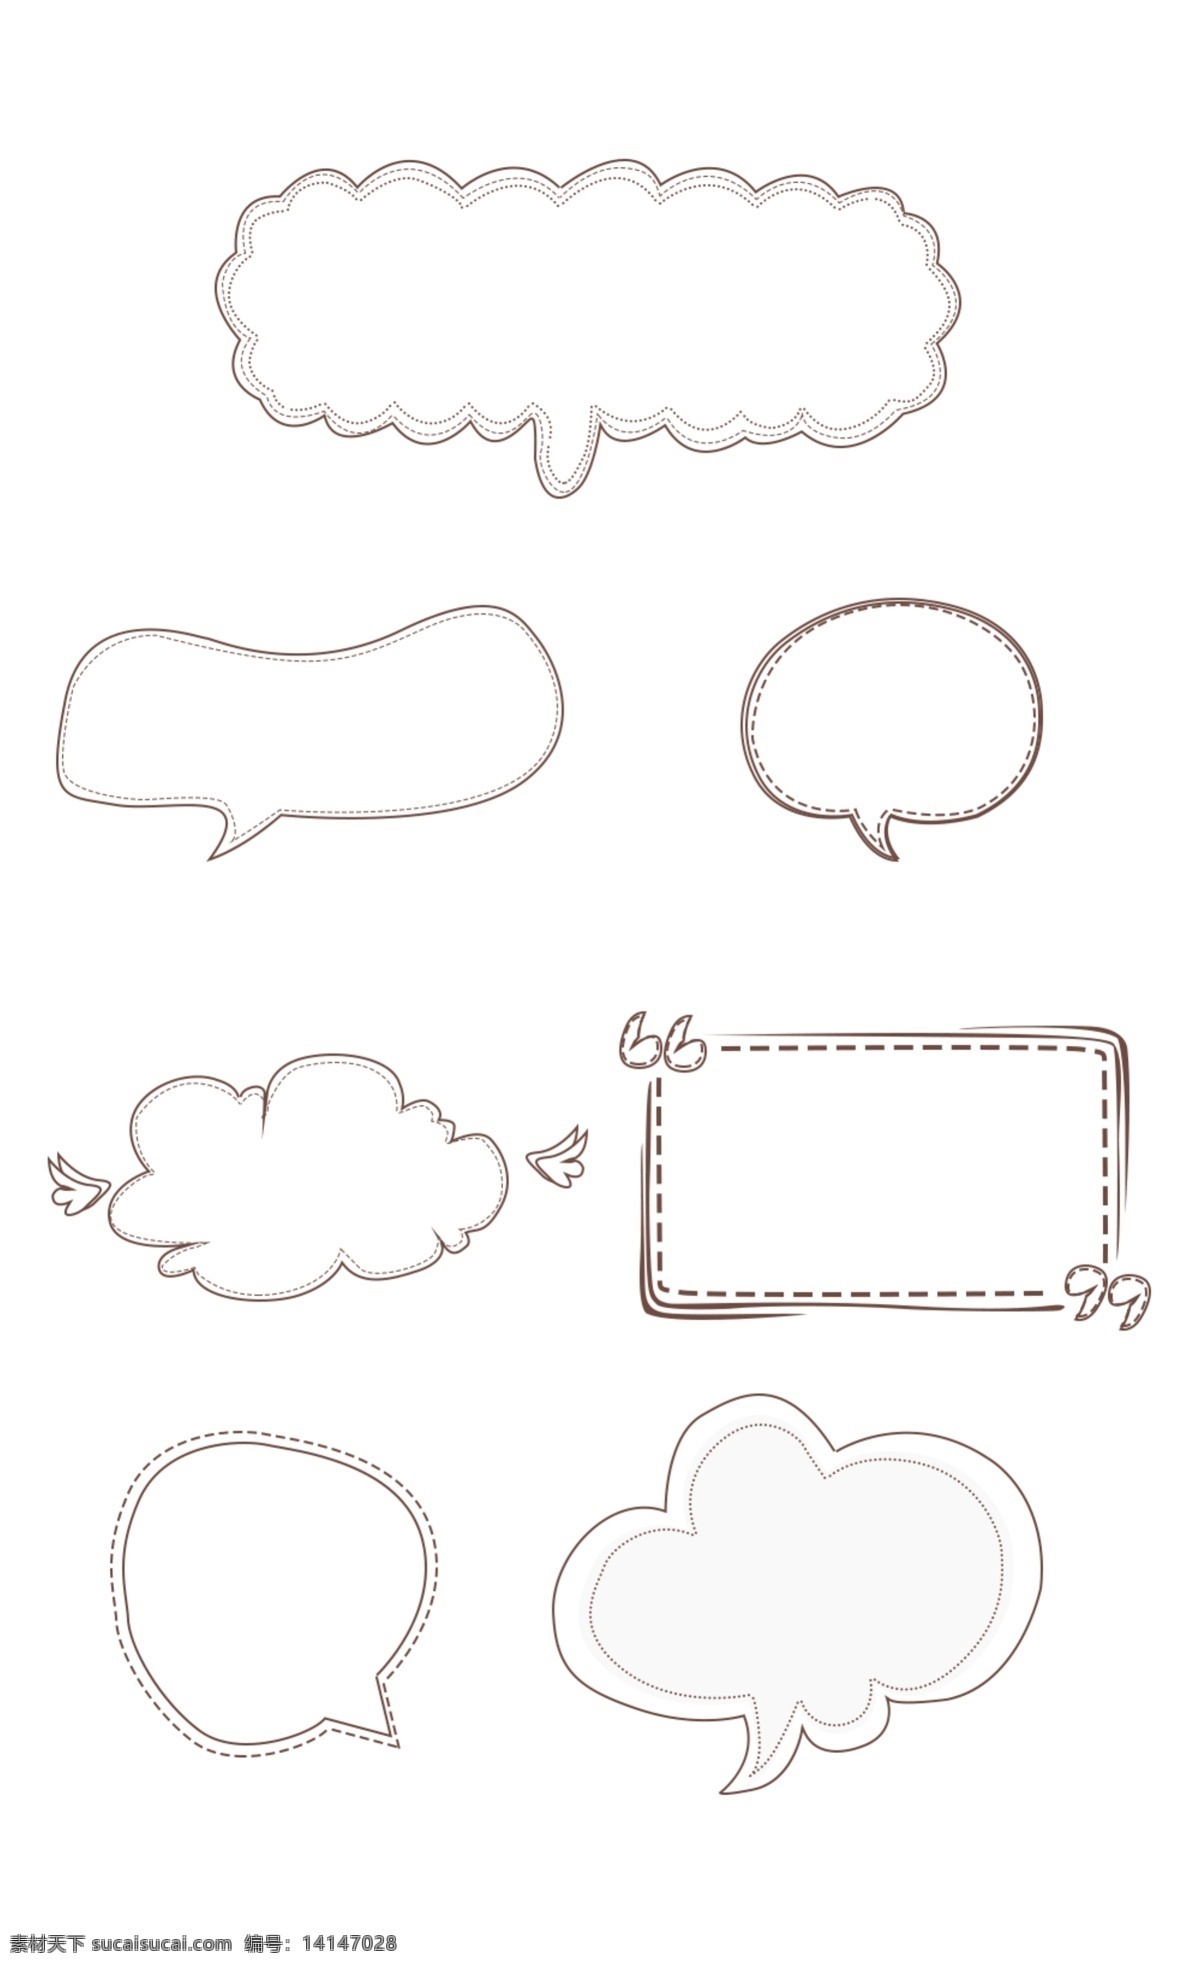 简约 可爱 卡通 边框 线条 不规则 创意 对话框 方框 投稿 起泡 纹理边框 云朵